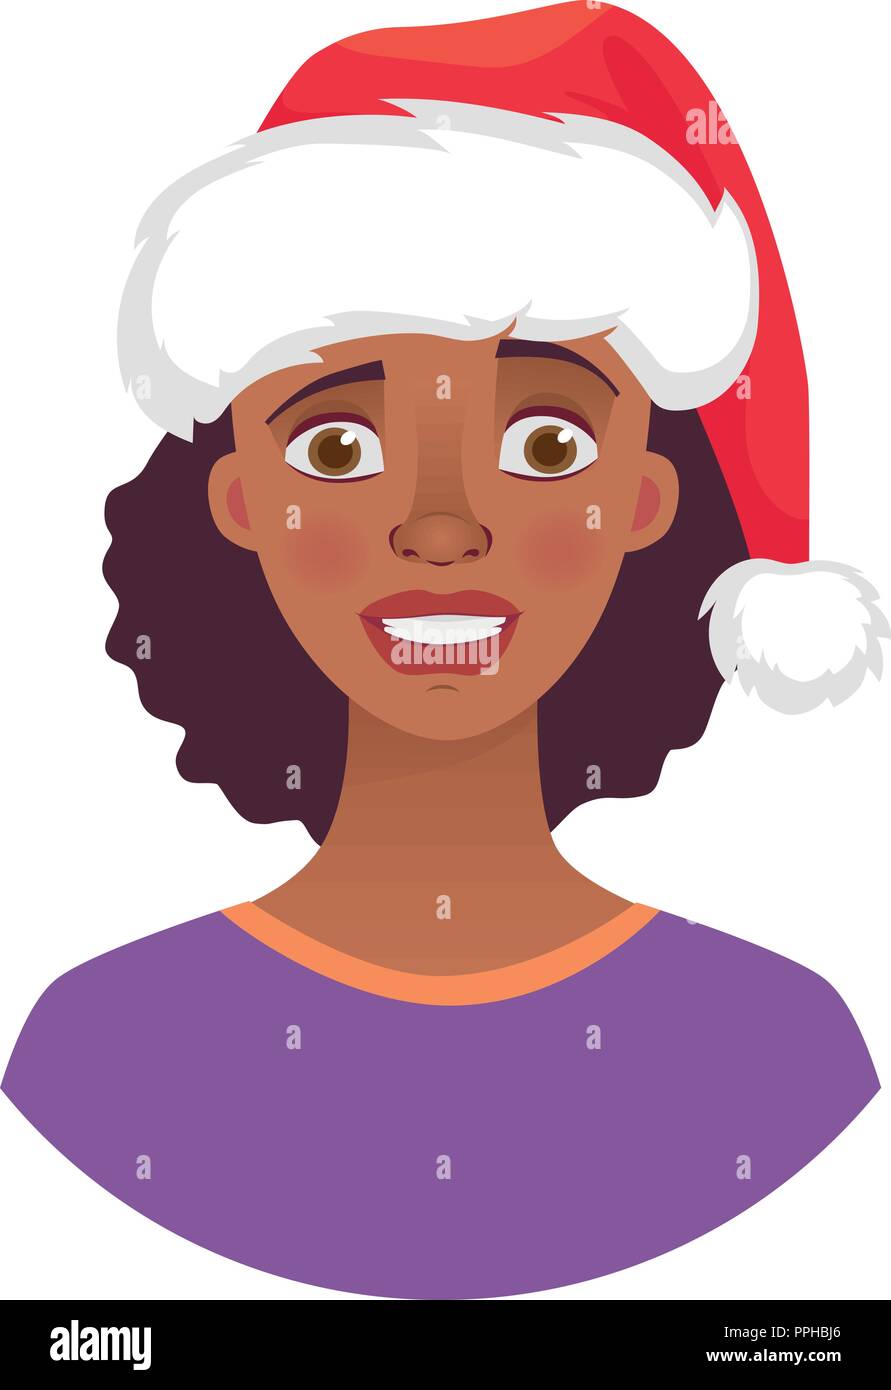 Weihnachten Frau in Santa Claus hat. Gefühle der afrikanischen amerikanischen Frau Gesicht. Gesichtsausdruck. Afrikanisches Mädchen Vector Illustration Stock Vektor